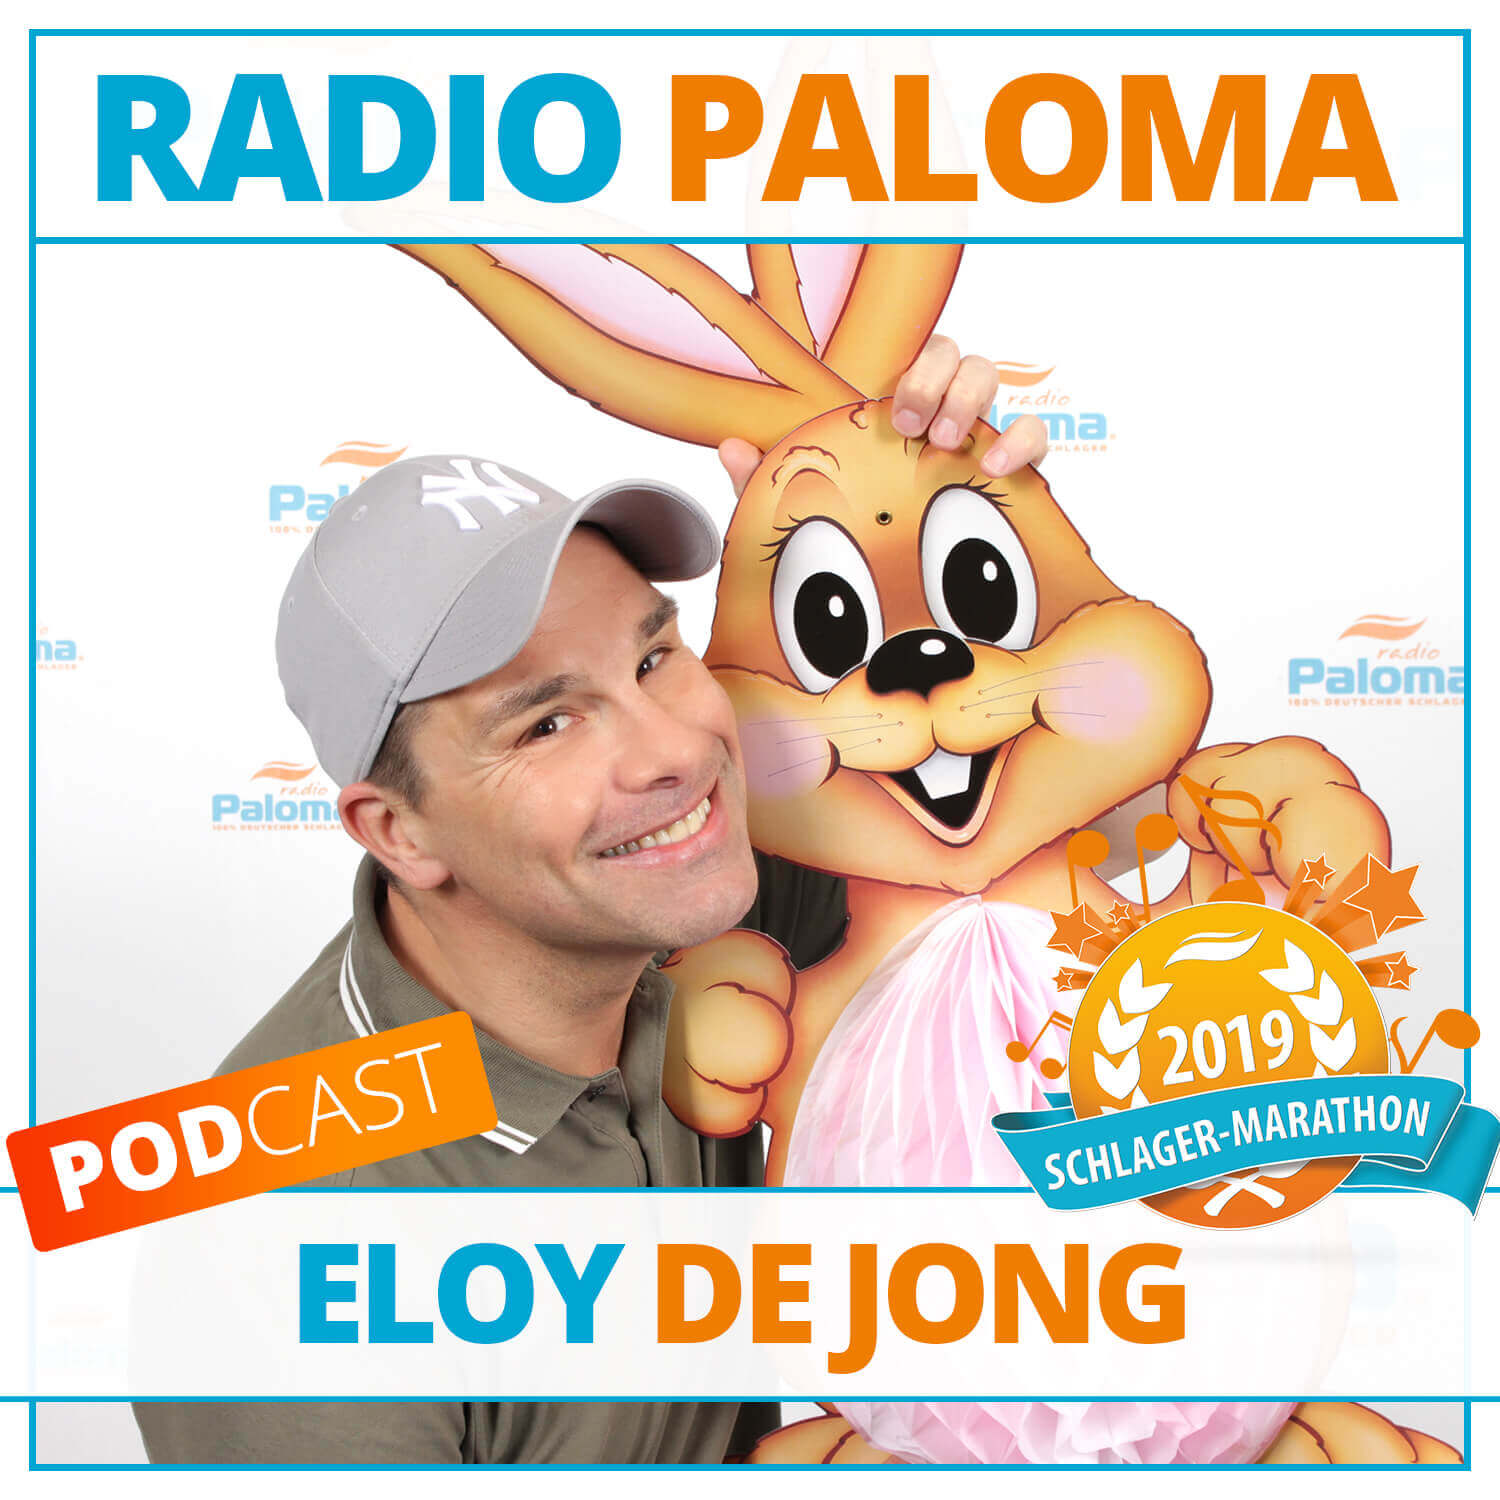 Der Radio Paloma Schlager-Marathon 2019 mit Eloy De Jong